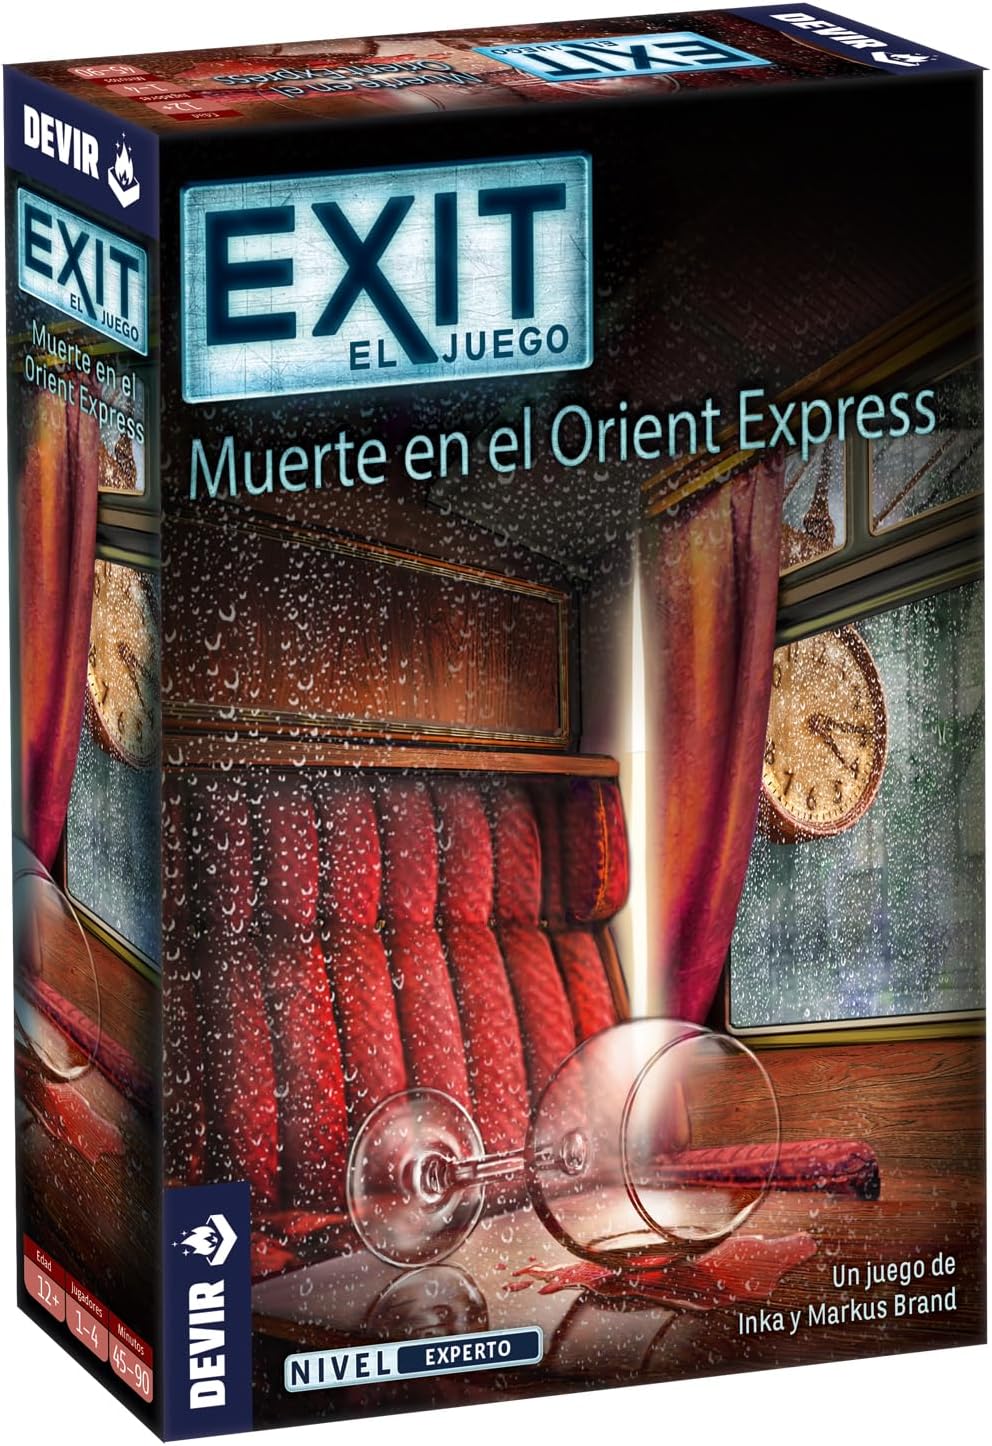 exit la muerte en el oriet express juego escape room